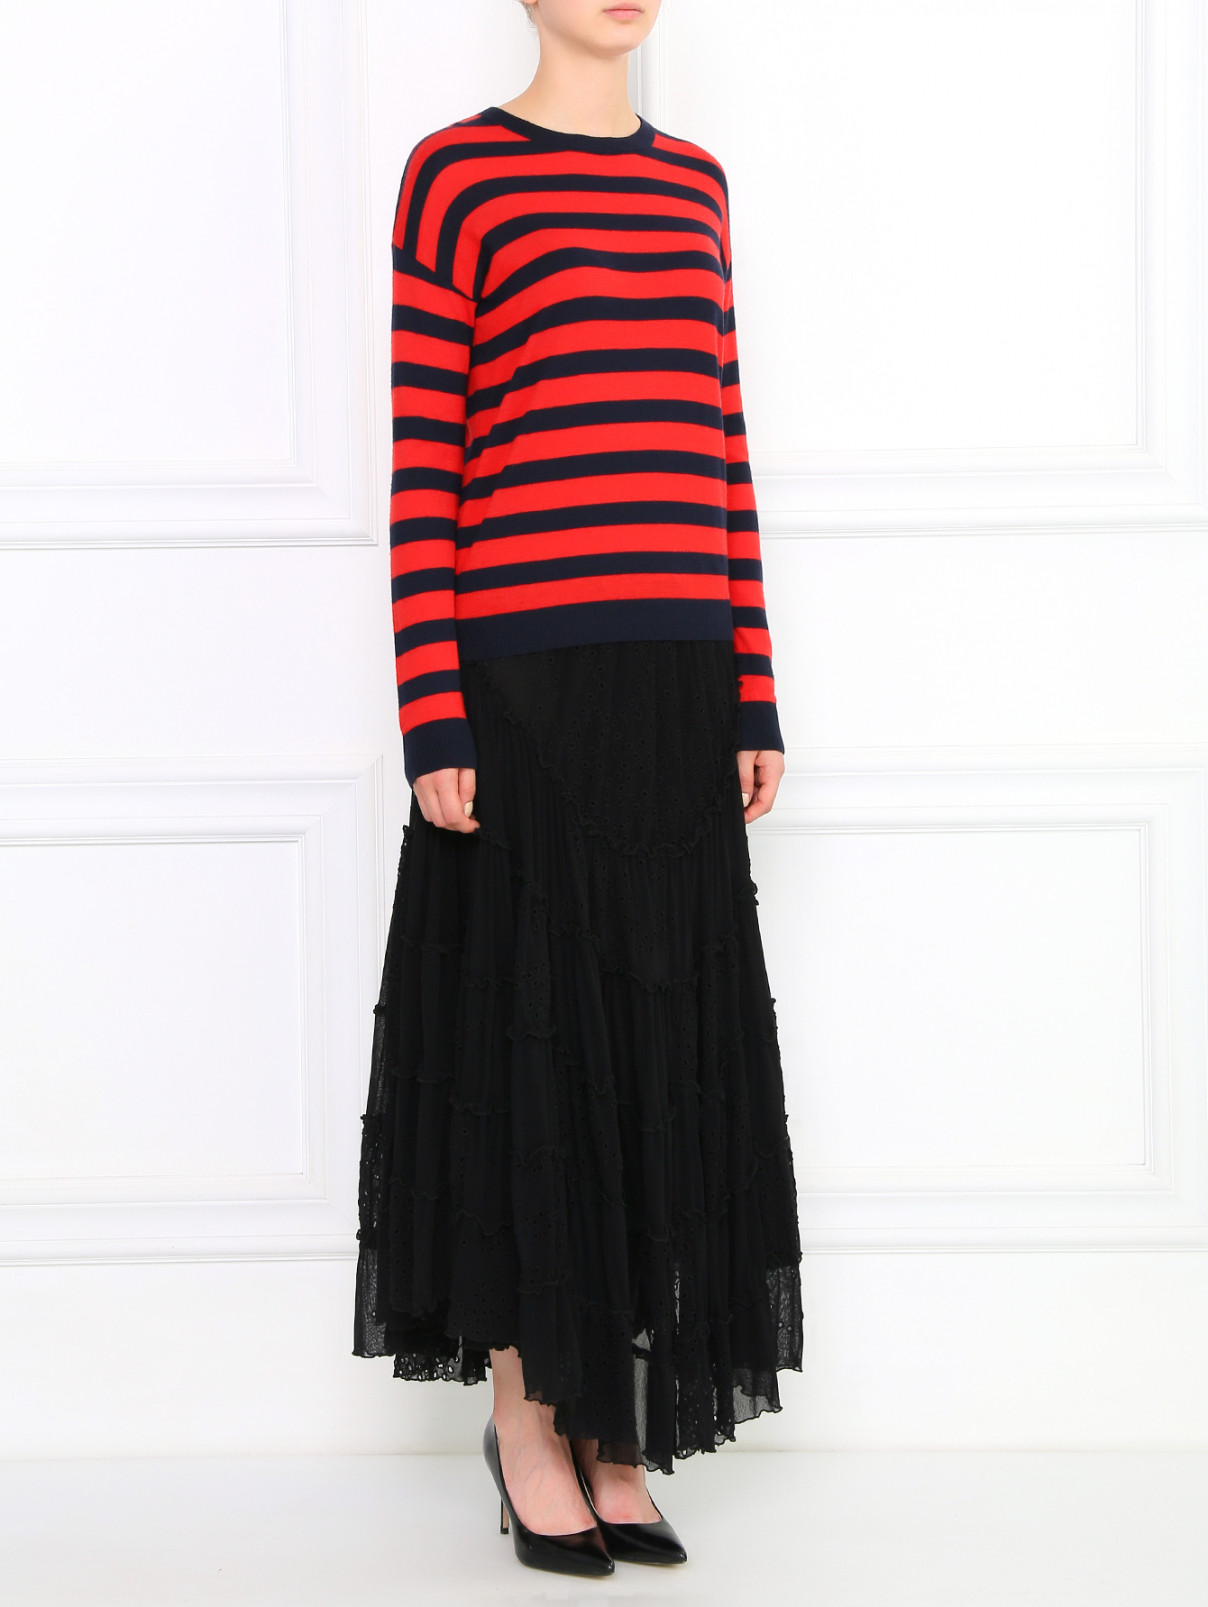 Кружевная юбка-миди на резинке Jean Paul Gaultier  –  Модель Общий вид  – Цвет:  Черный